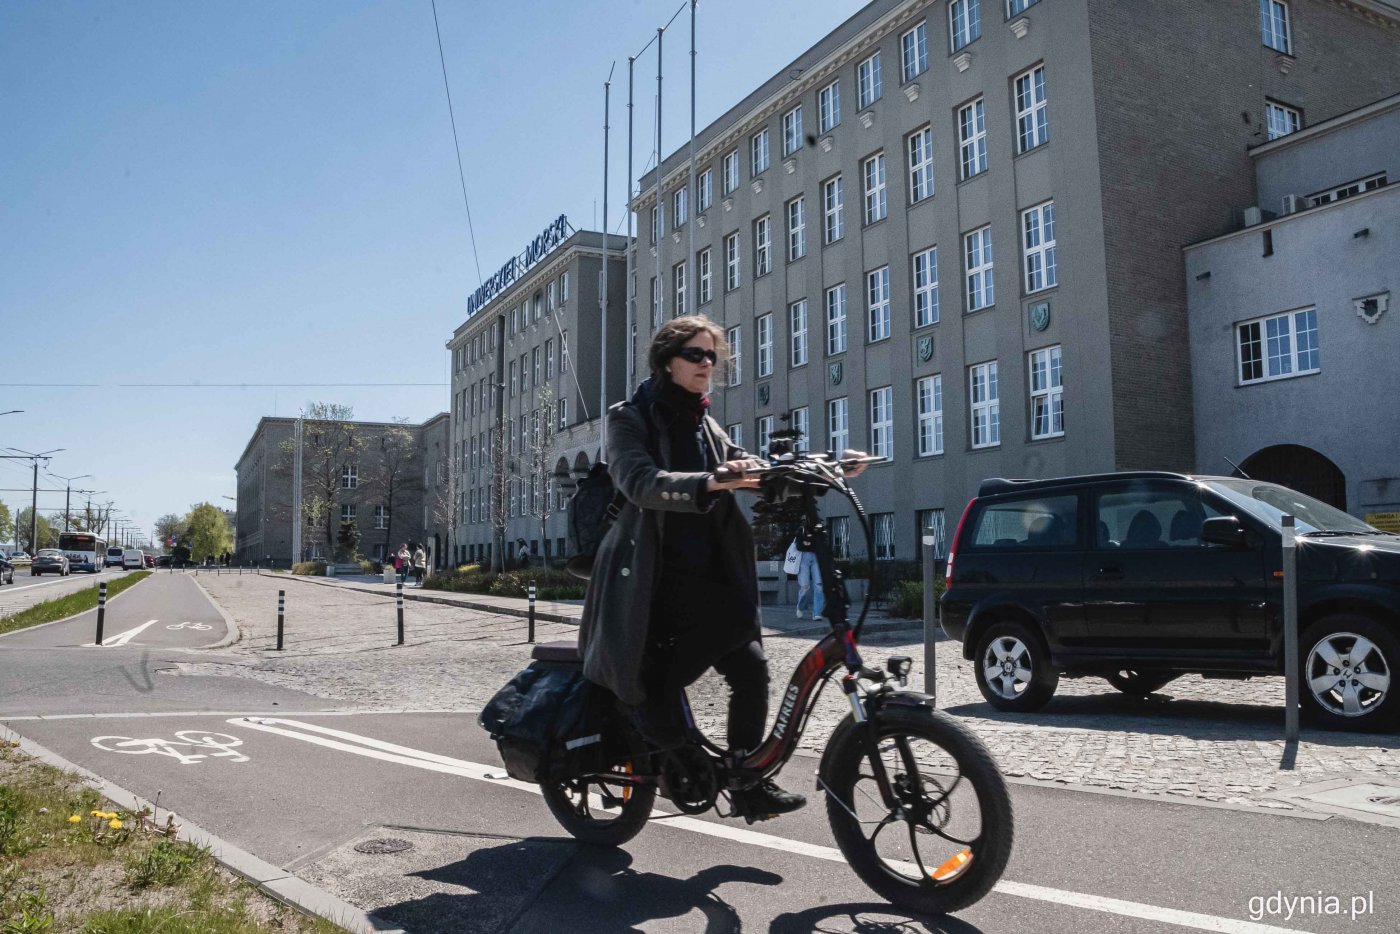 Budynek Uniwersytetu Morskiego, plac przed budynkiem, zaparkowany samochód, na pierwszym planie przejeżdża kobieta na czarnym rowerze